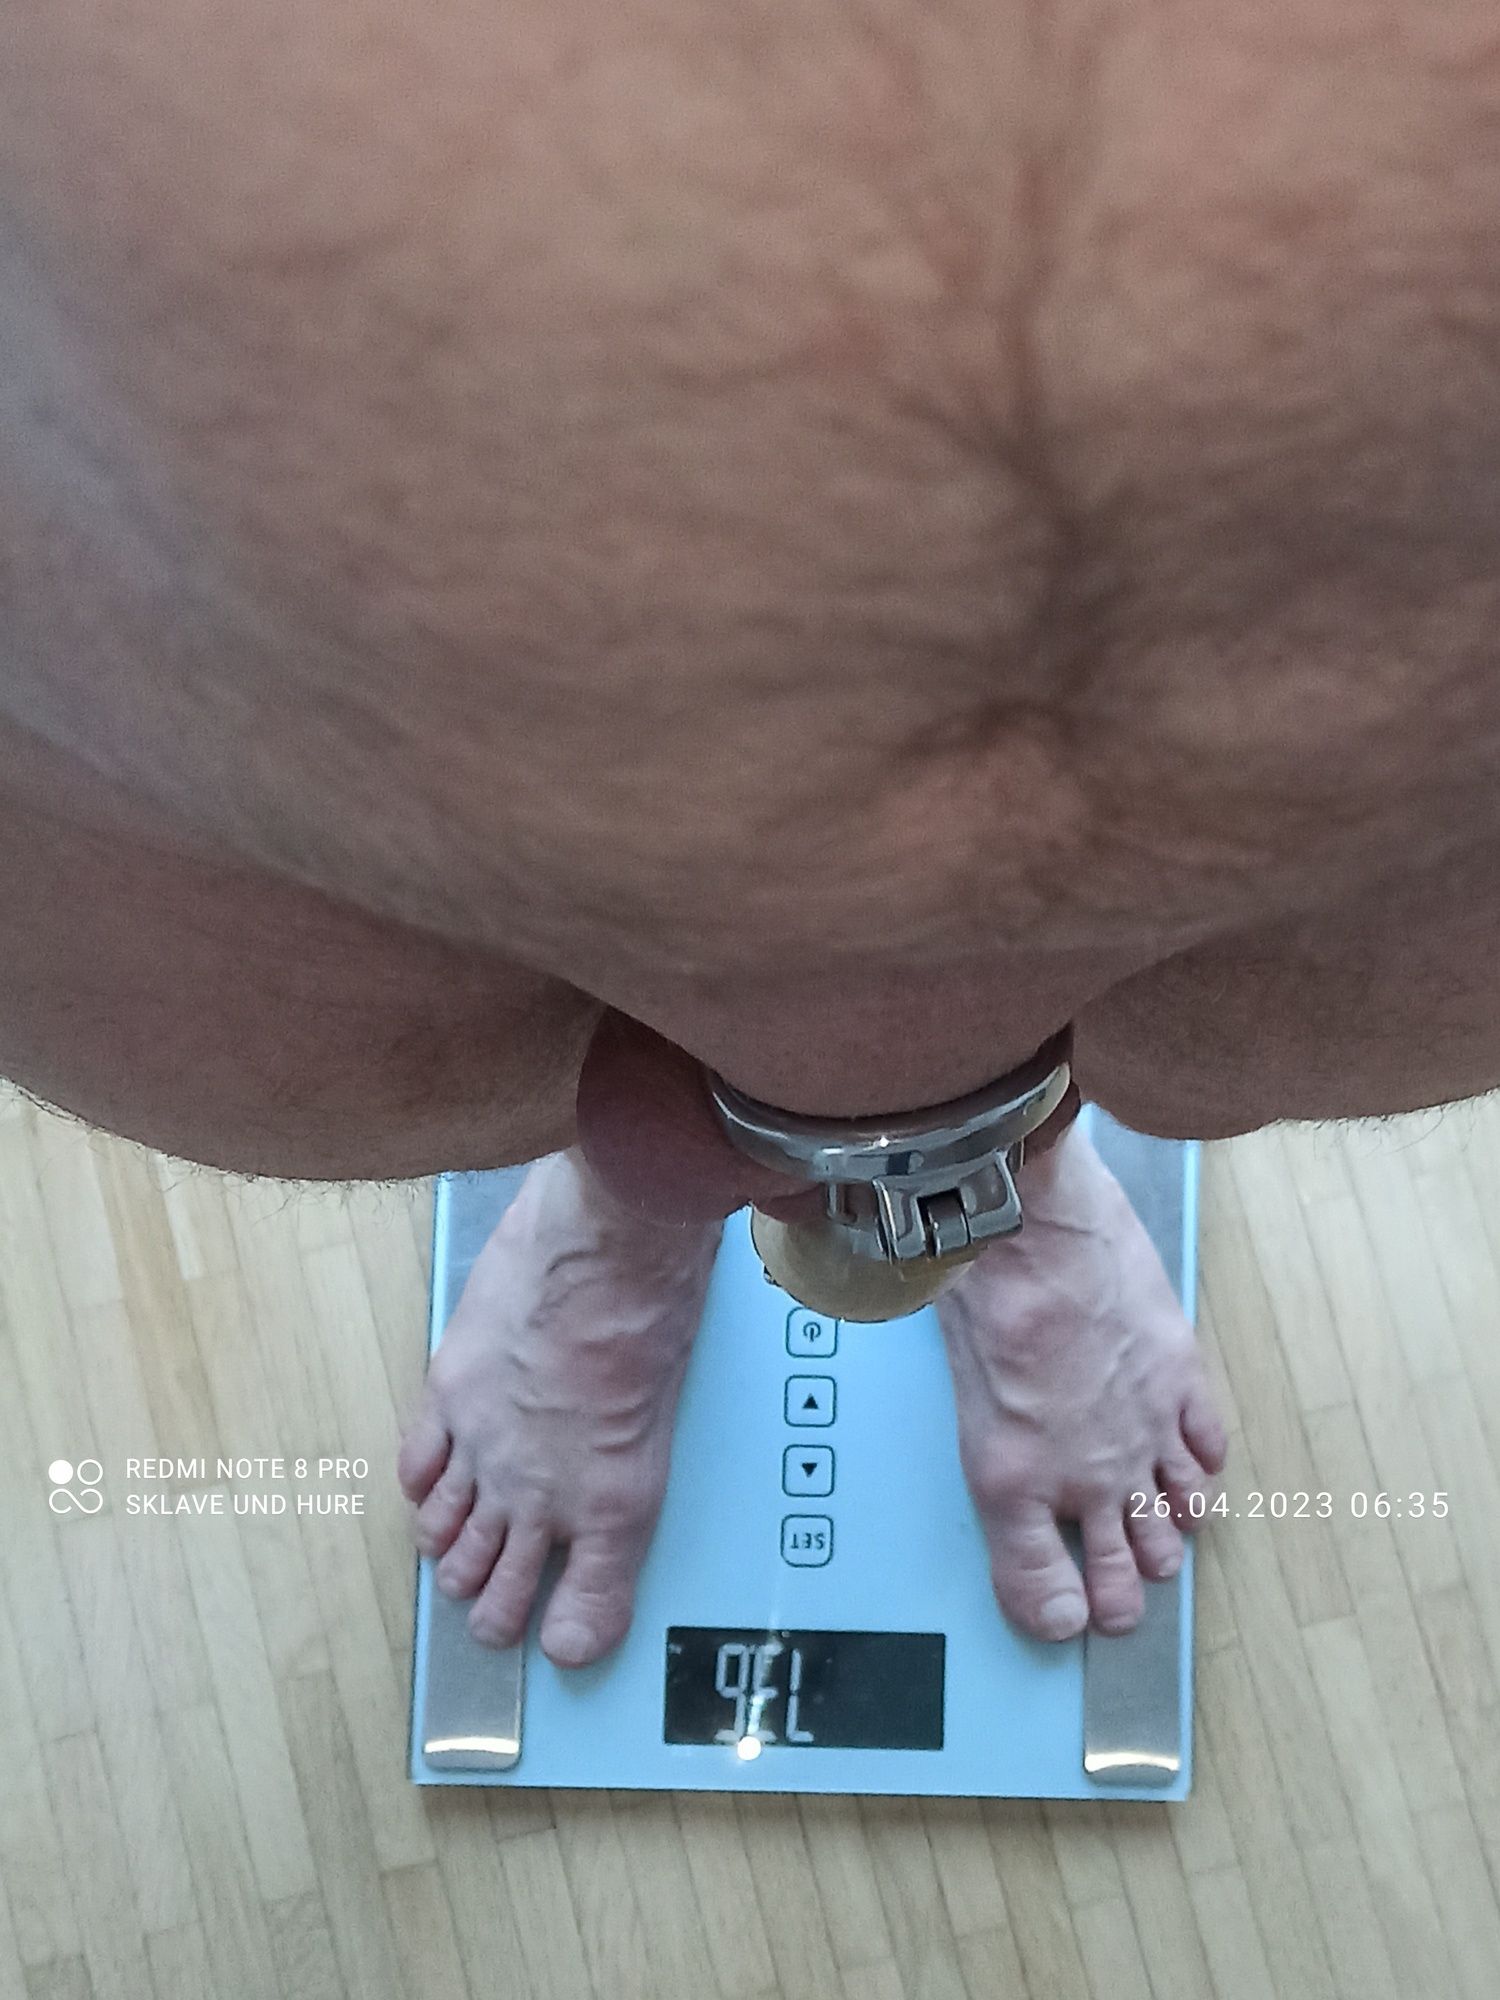 weighing cagecheck 26.04.2023 #15